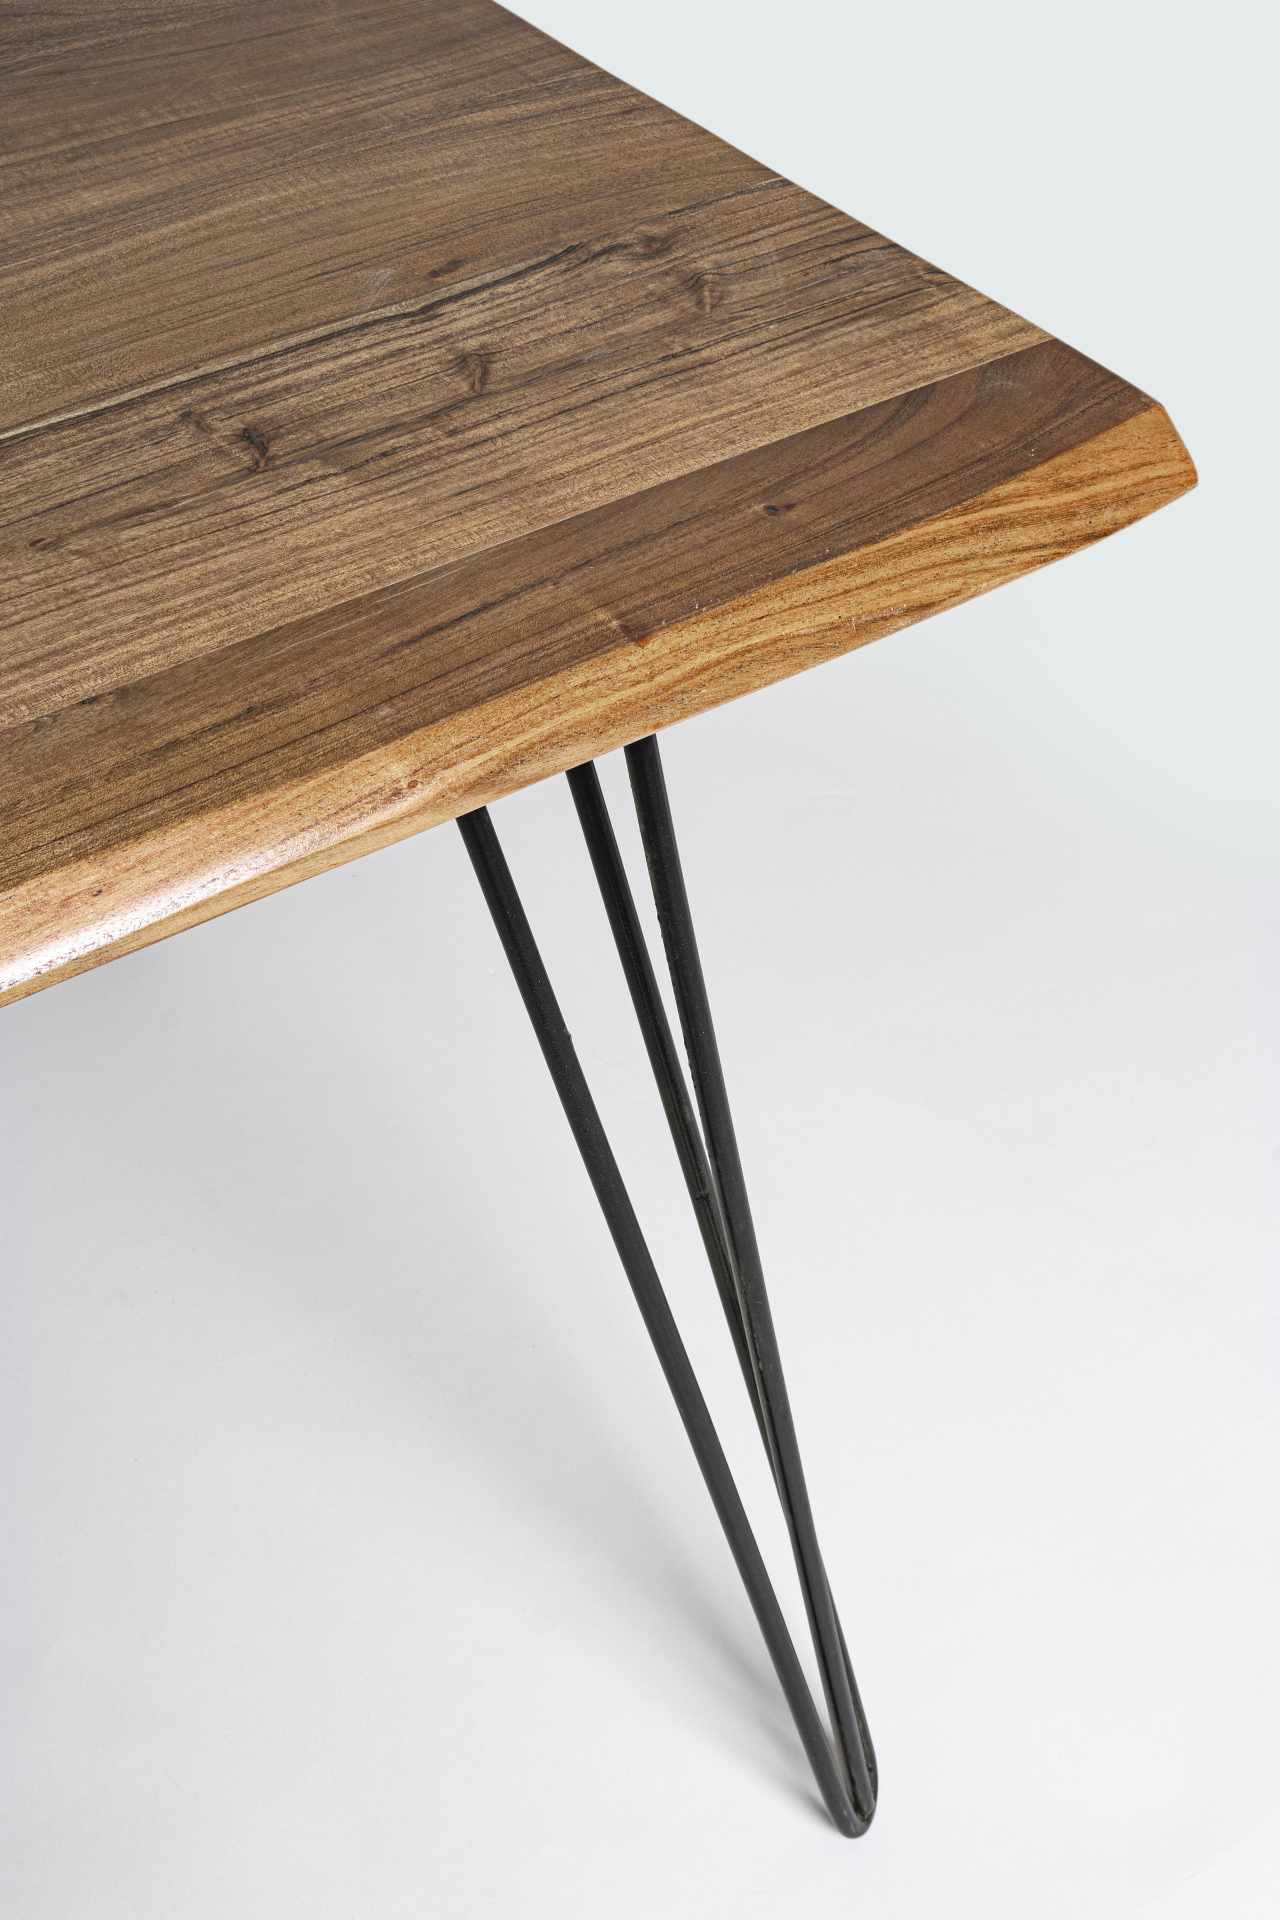 Der Esstisch Barlow überzeugt mit seinem moderndem Design. Gefertigt wurde er aus Akazienholz, welches einen natürlichen Farbton besitzt. Das Gestell des Tisches ist aus Metall und ist in eine schwarze Farbe. Der Tisch besitzt eine Breite von 180 cm.